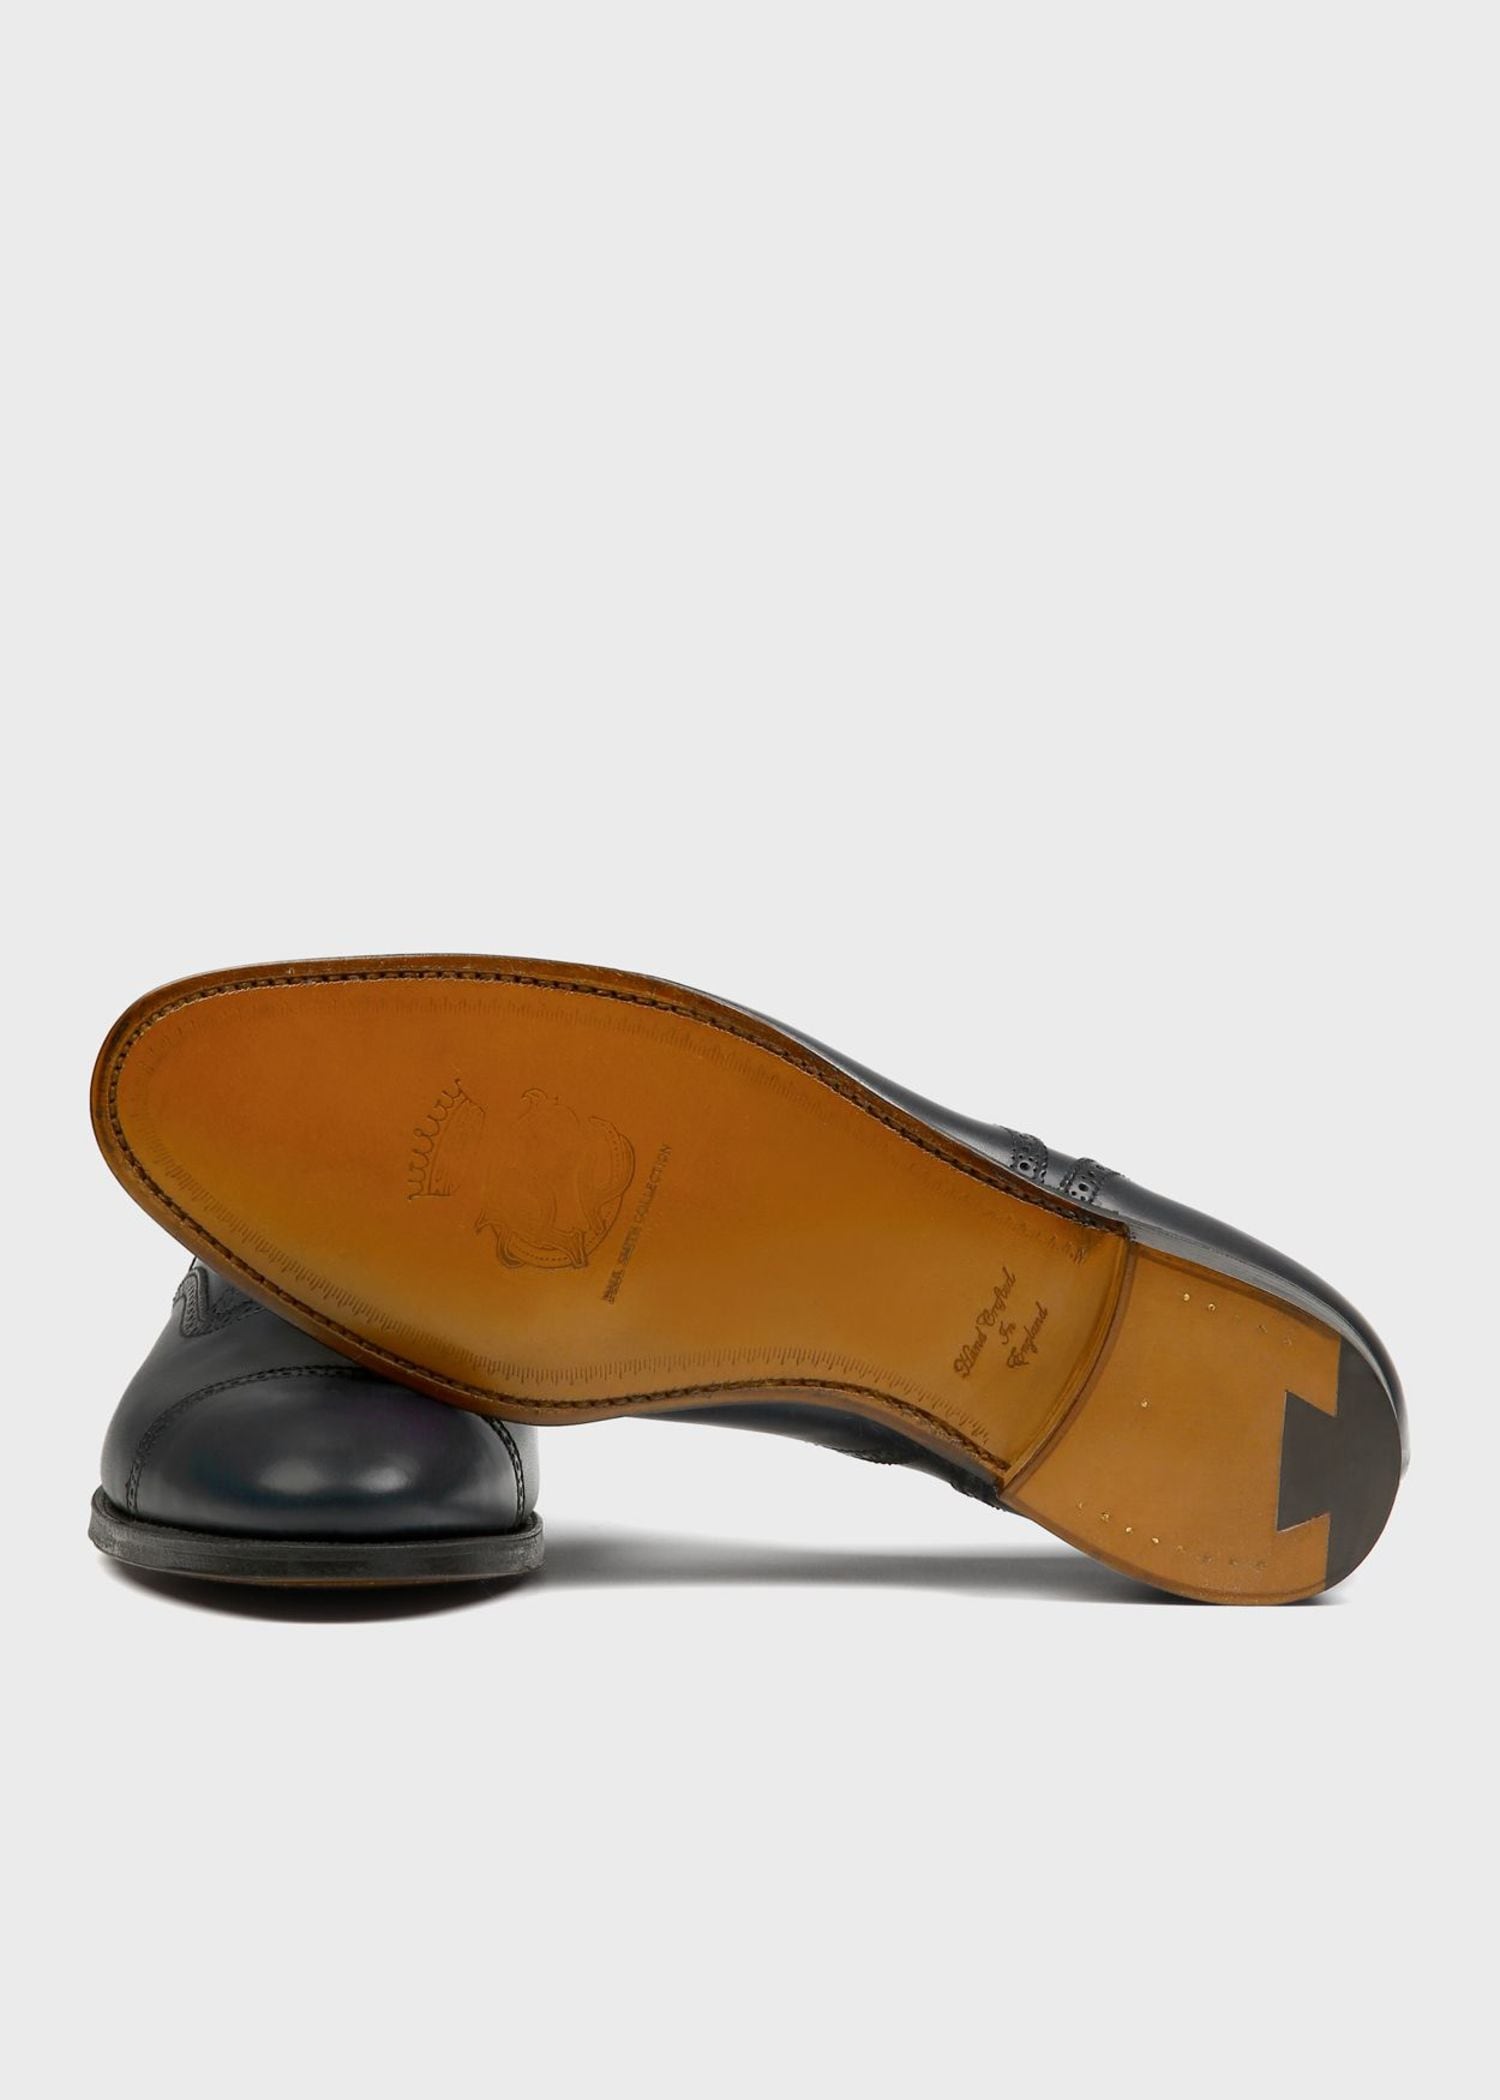 新発売の ポールスミス クロケットアンドジョーンズ ダブルネーム 靴